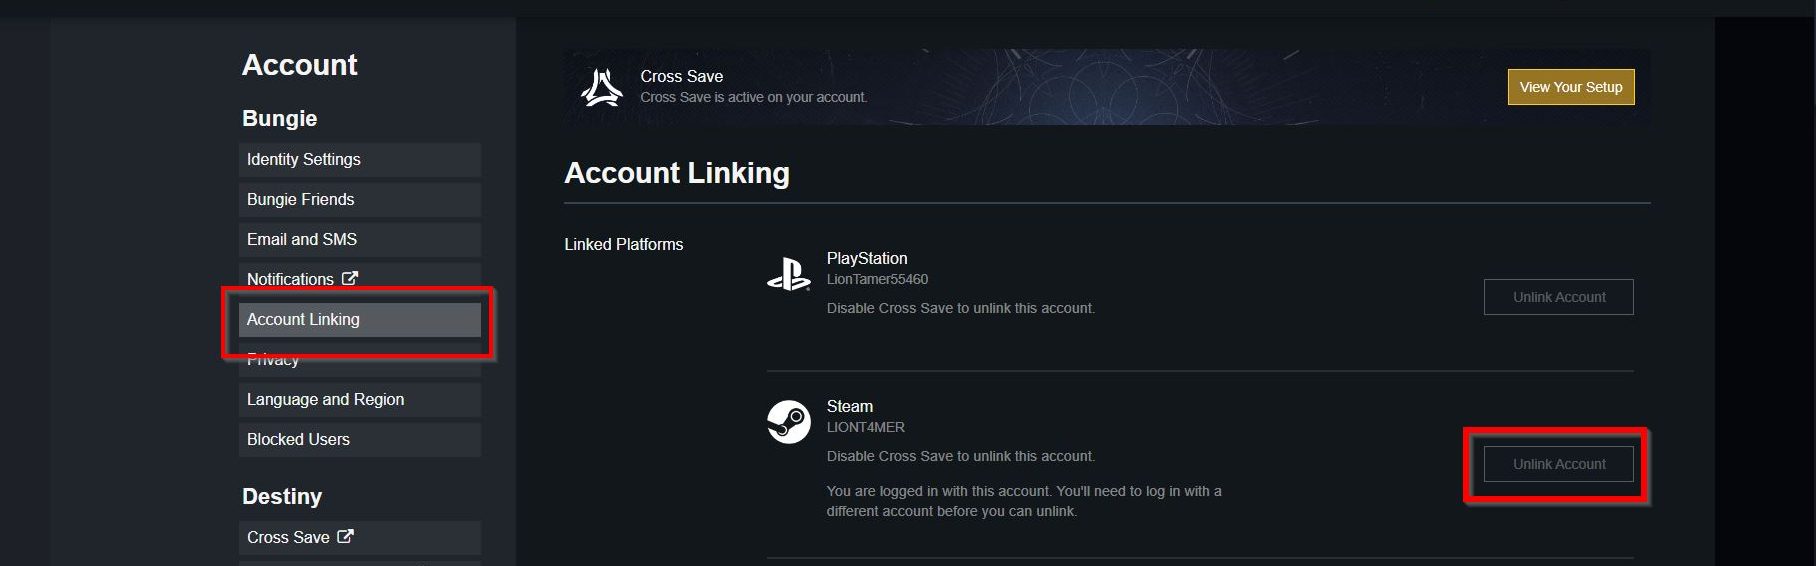 Destiny 2 unlink account